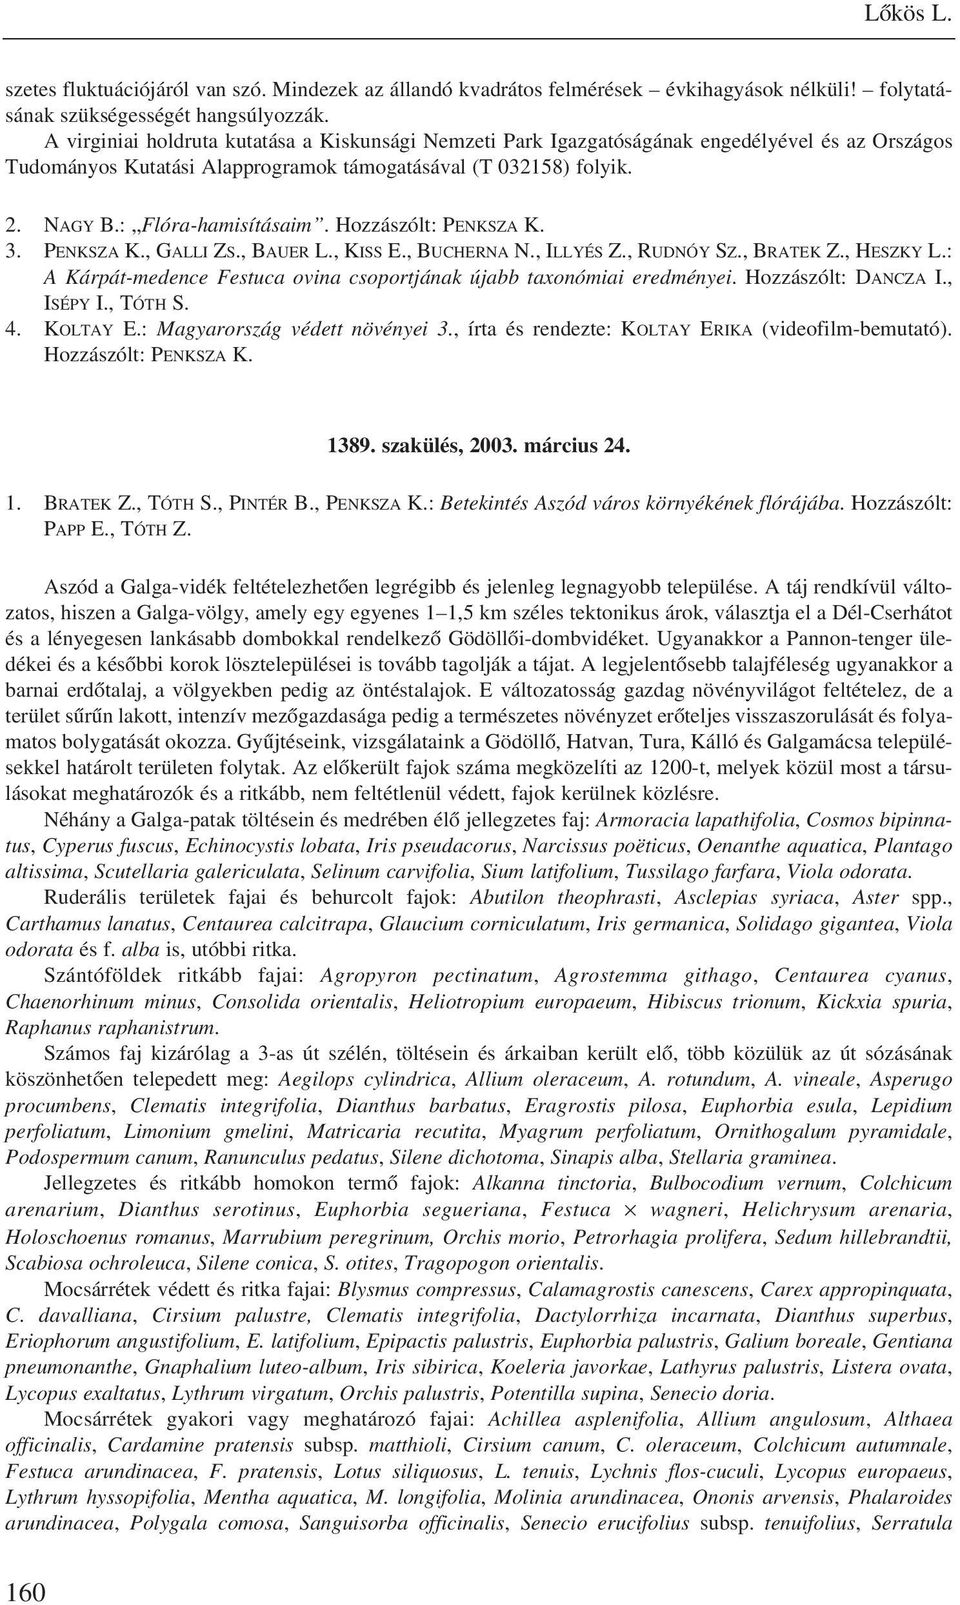 Hozzászólt: PENKSZA K. 3. PENKSZA K., GALLI ZS., BAUER L., KISS E., BUCHERNA N., ILLYÉS Z., RUDNÓY SZ., BRATEK Z., HESZKY L.: A Kárpát-medence Festuca ovina csoportjának újabb taxonómiai eredményei.